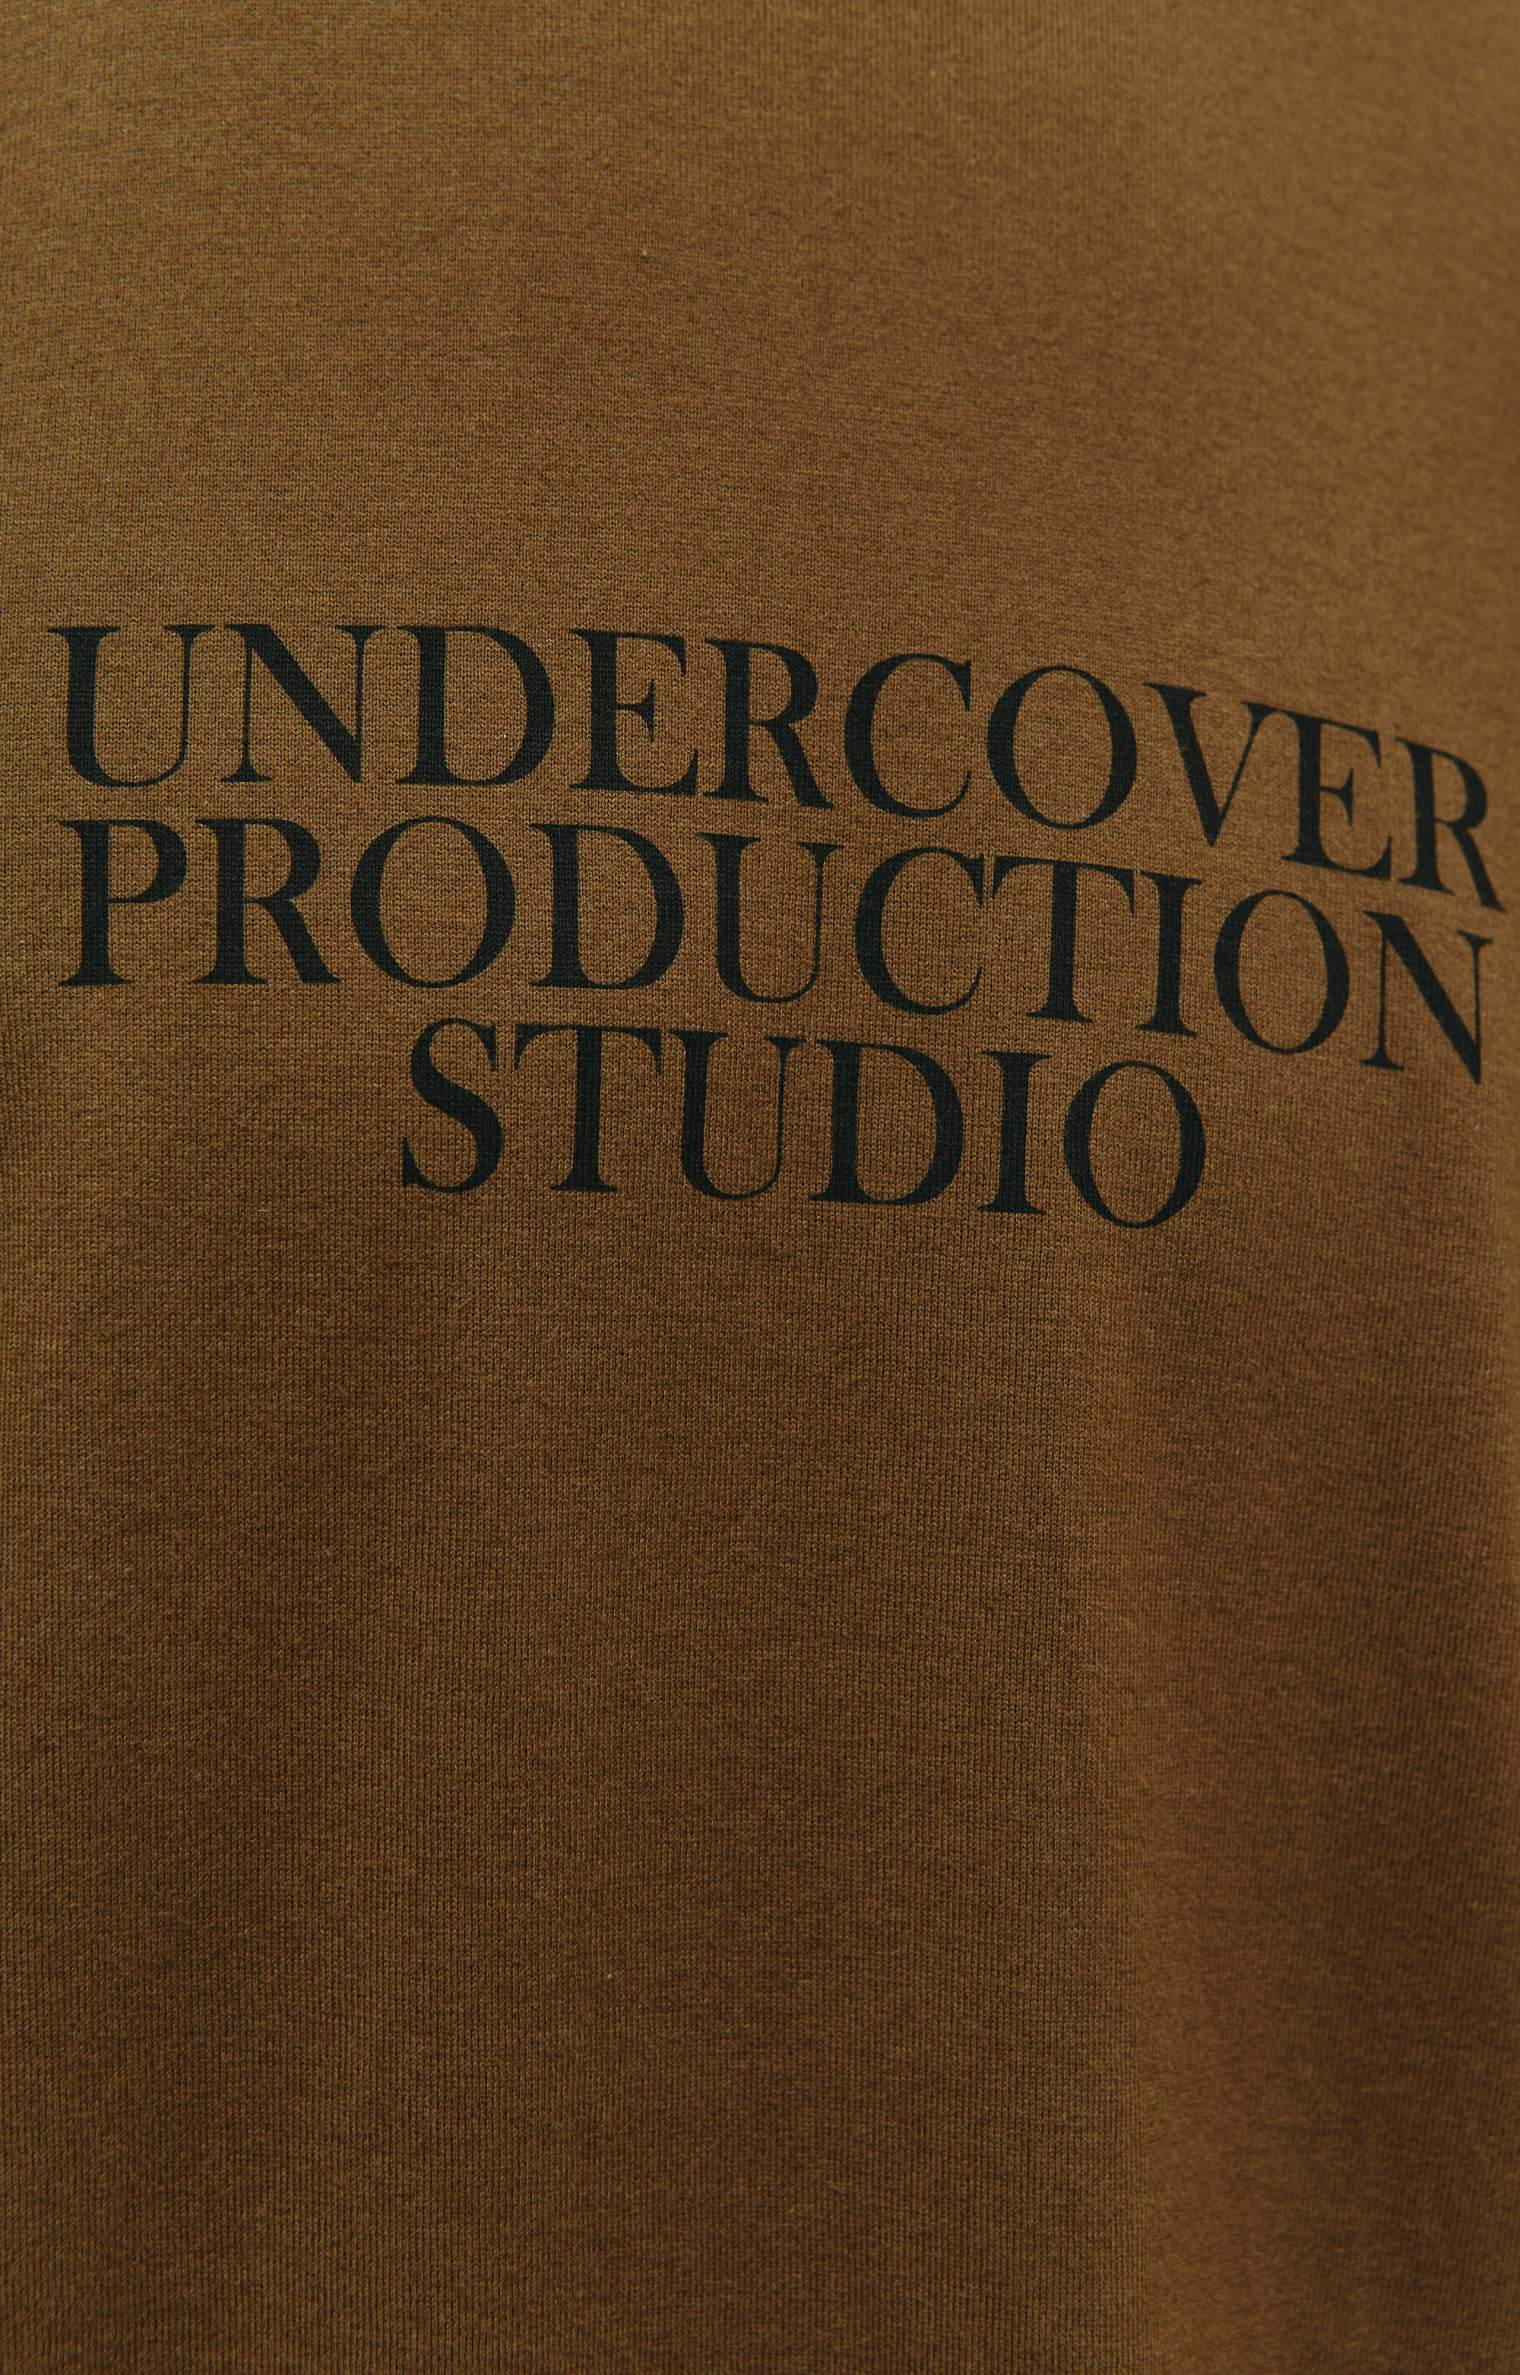 Undercover Футболка Production Studio